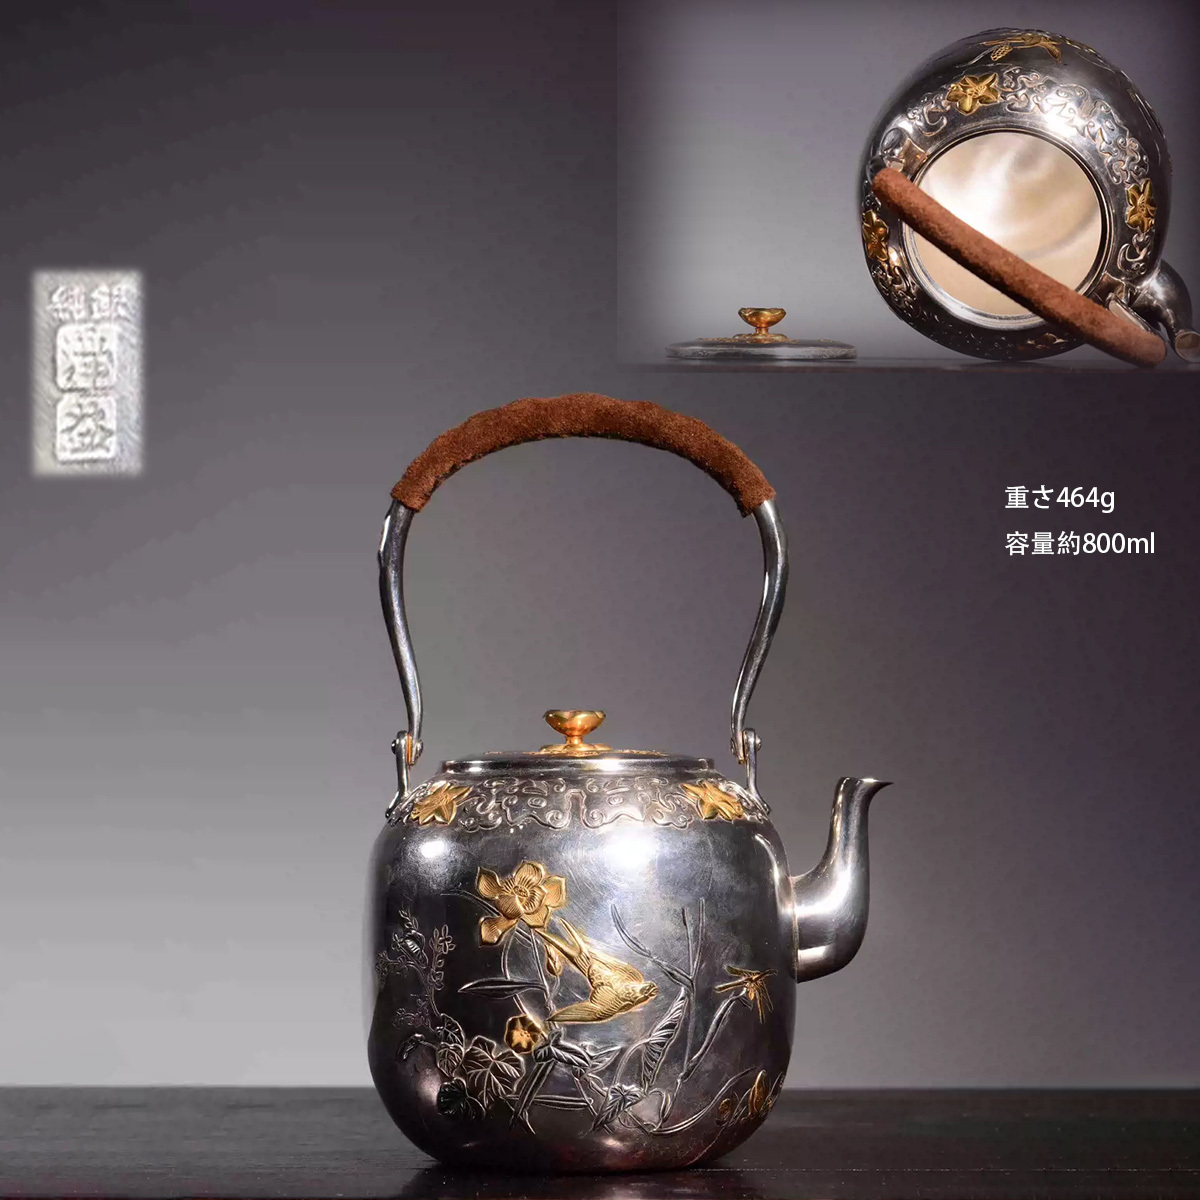 古銀 茶壺 浄益 造 「純銀彩金浮彫花鳥紋提梁壺」 銀瓶 煎茶 湯沸 茶道具 時代物 銀純度99.4% LT-0360